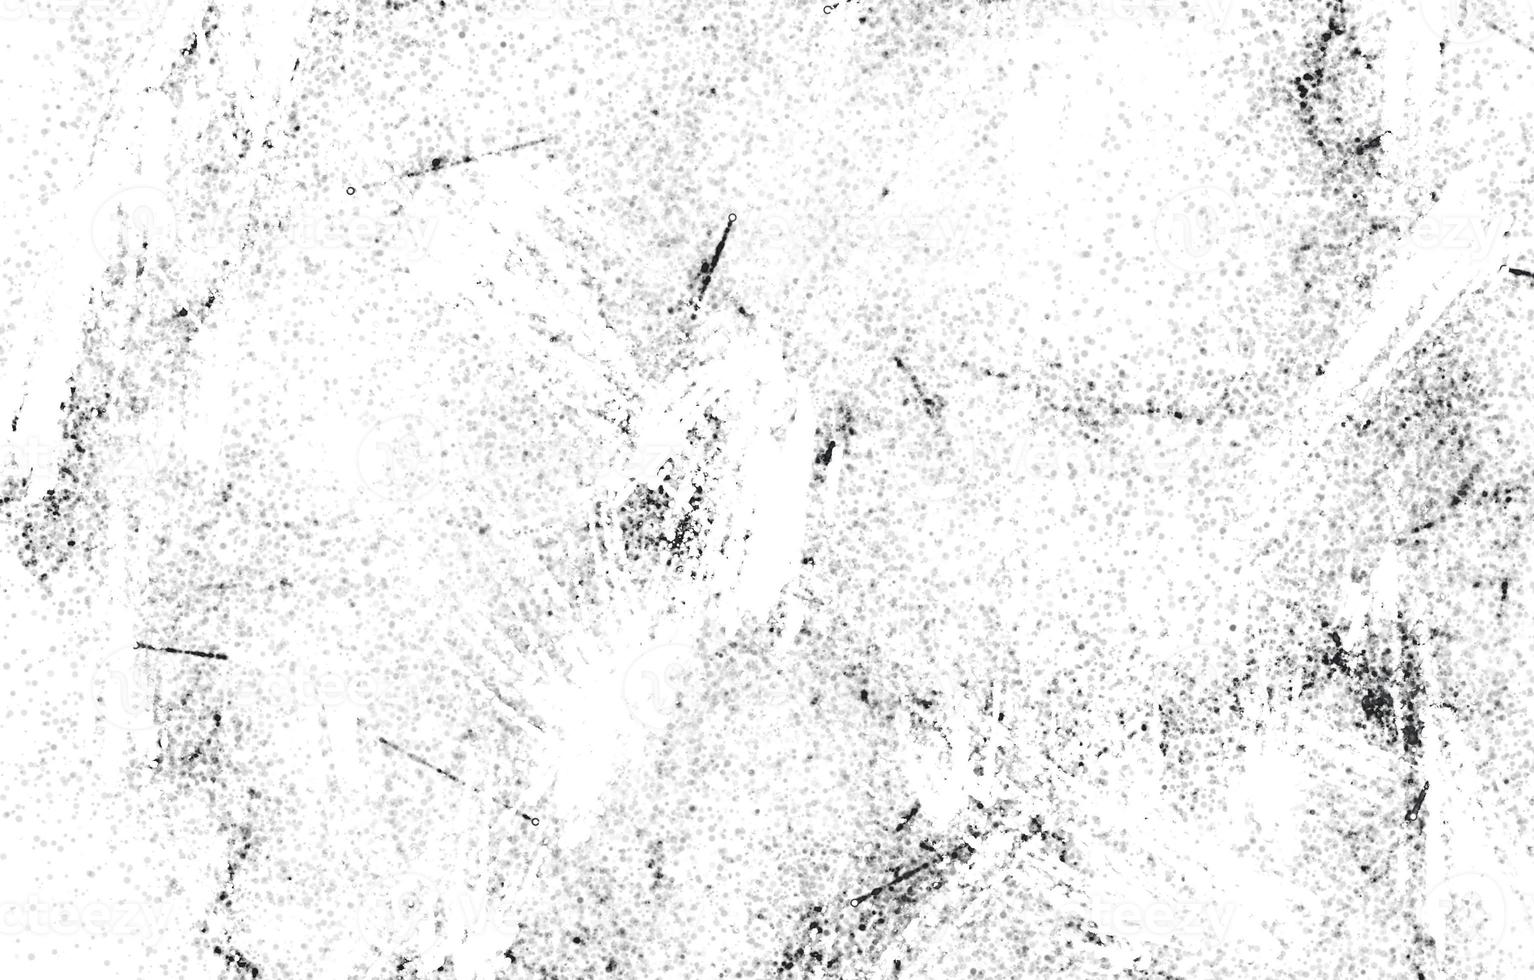 polvo y fondos texturados rayados.fondo de pared blanco y negro grunge.fondo de socorro superpuesto de polvo oscuro y desordenado. fácil de crear puntos abstractos, rayados foto